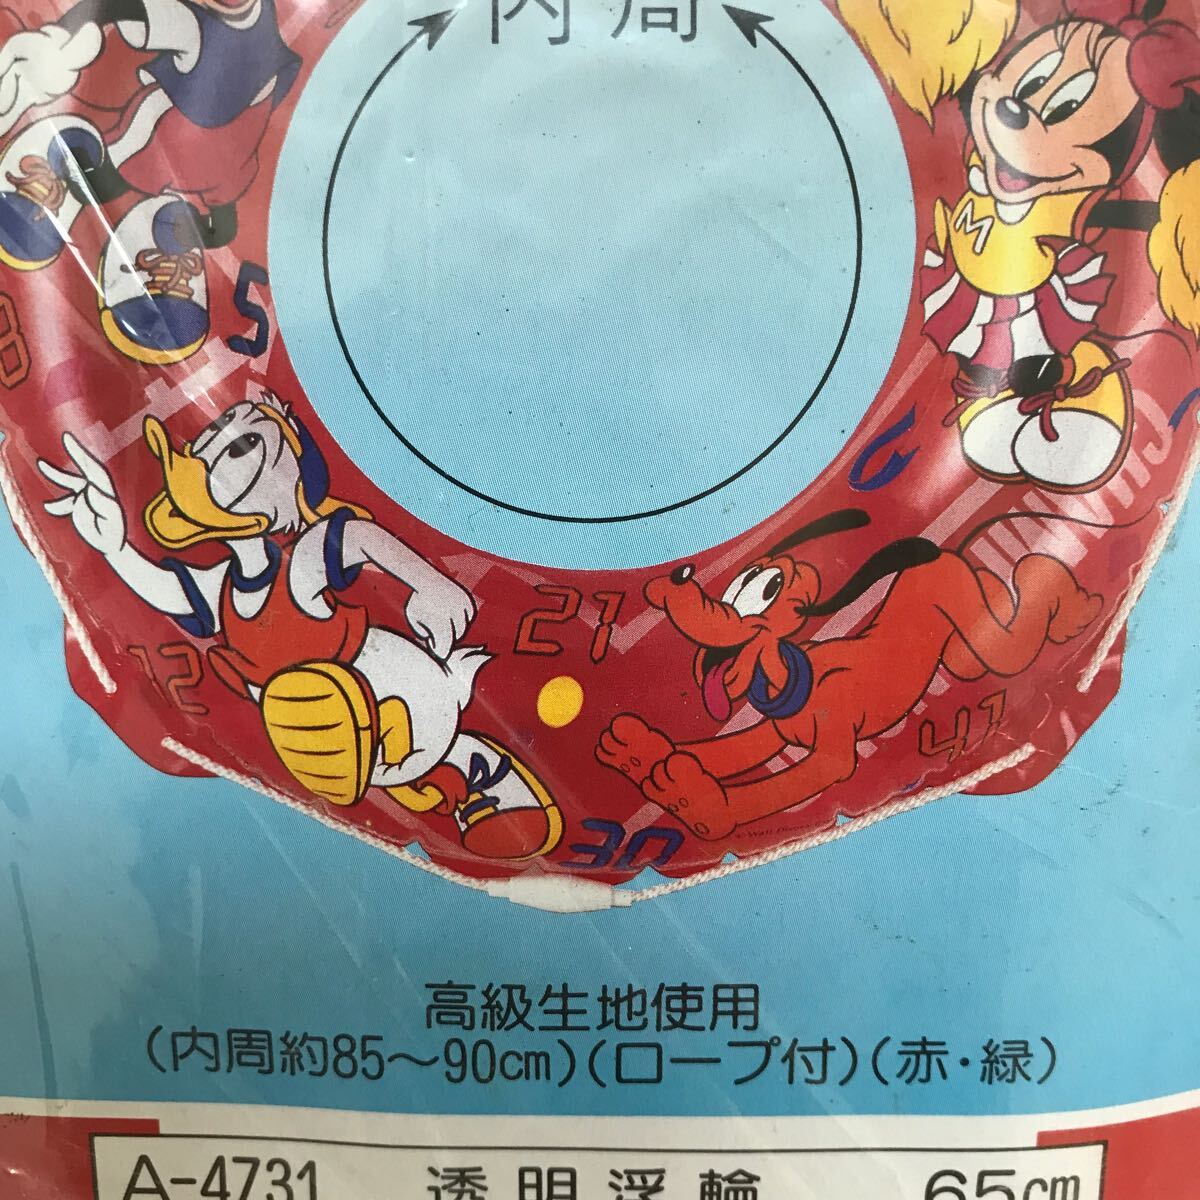  не использовался товар надувной круг ослабленное крепление . Disney Mickey Mouse 65cm средний . завод сделано в Японии воздух винил Showa Retro неиспользуемый товар море бассейн отходит колесо редкий 